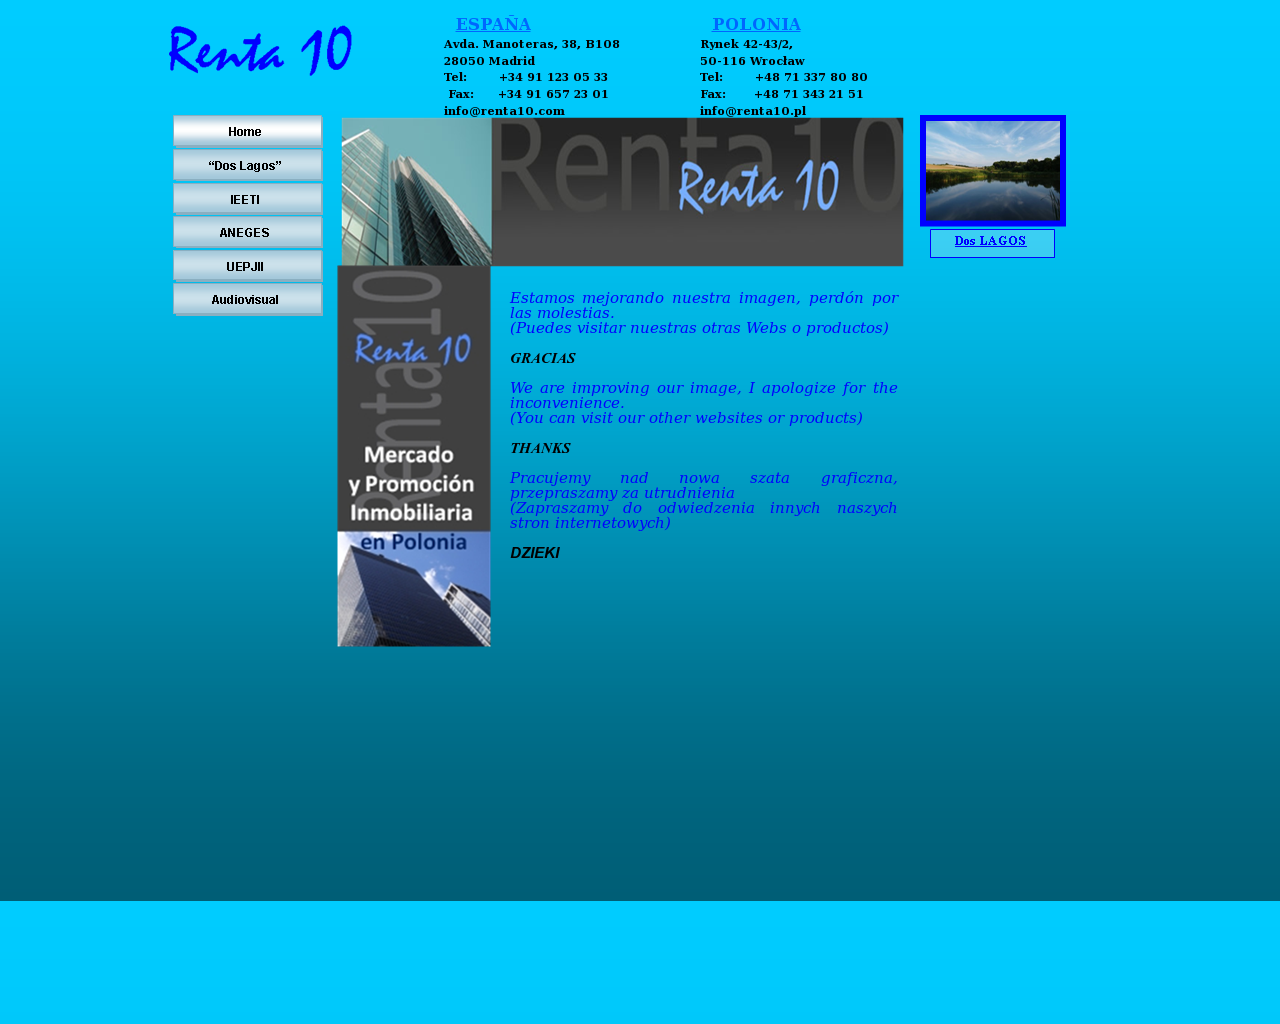 El sitio de la imagen r10.es en 1280x1024